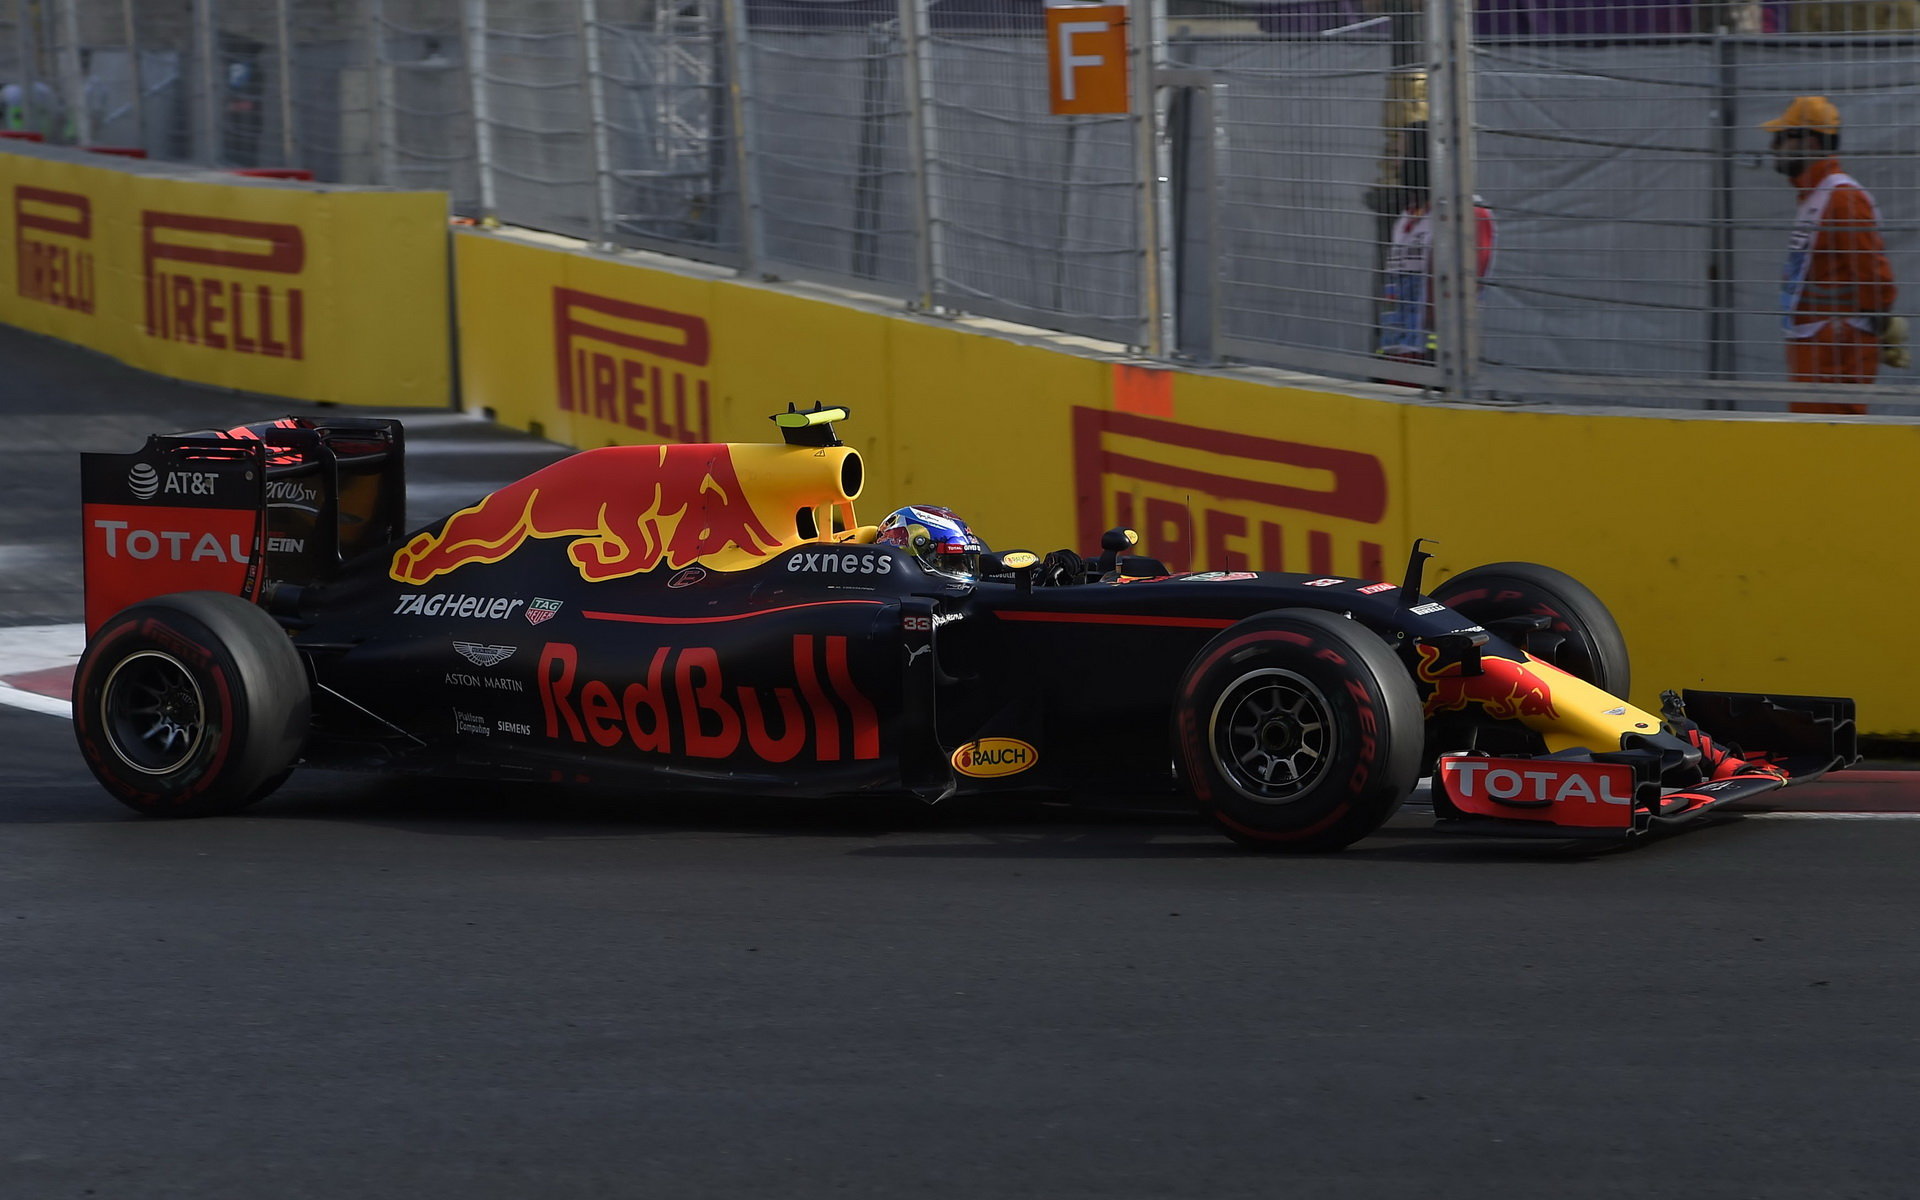 Max Verstappen v závodě v Baku